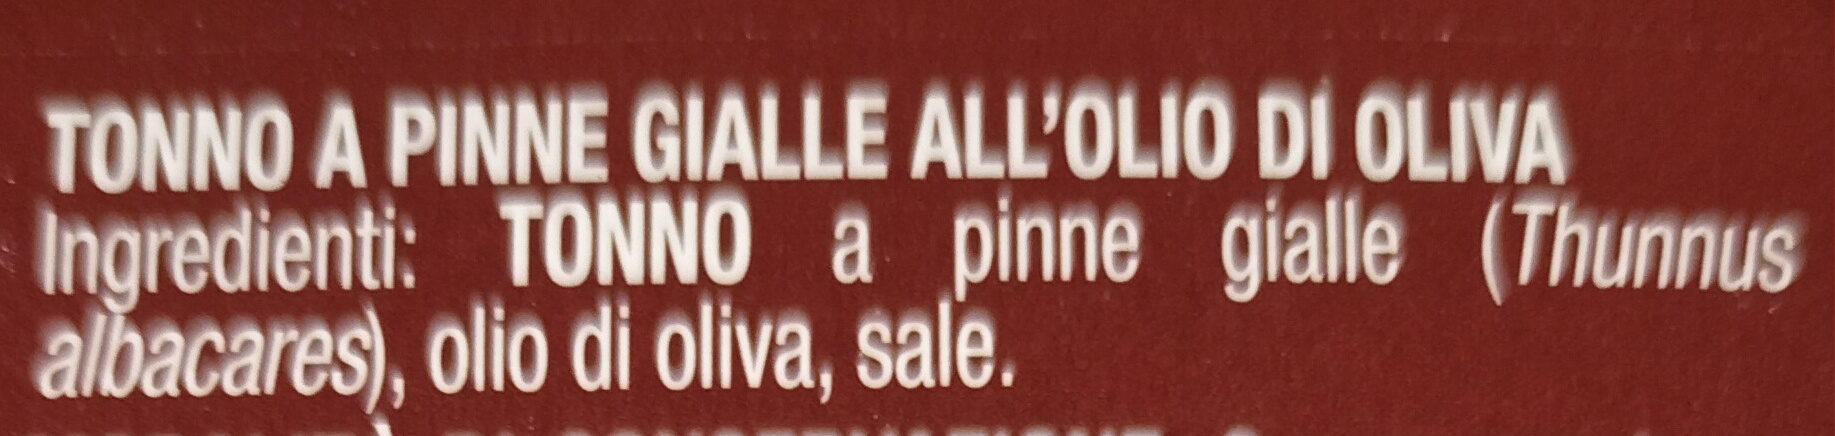 Unes Tonno all'olio di oliva - Ingredienti